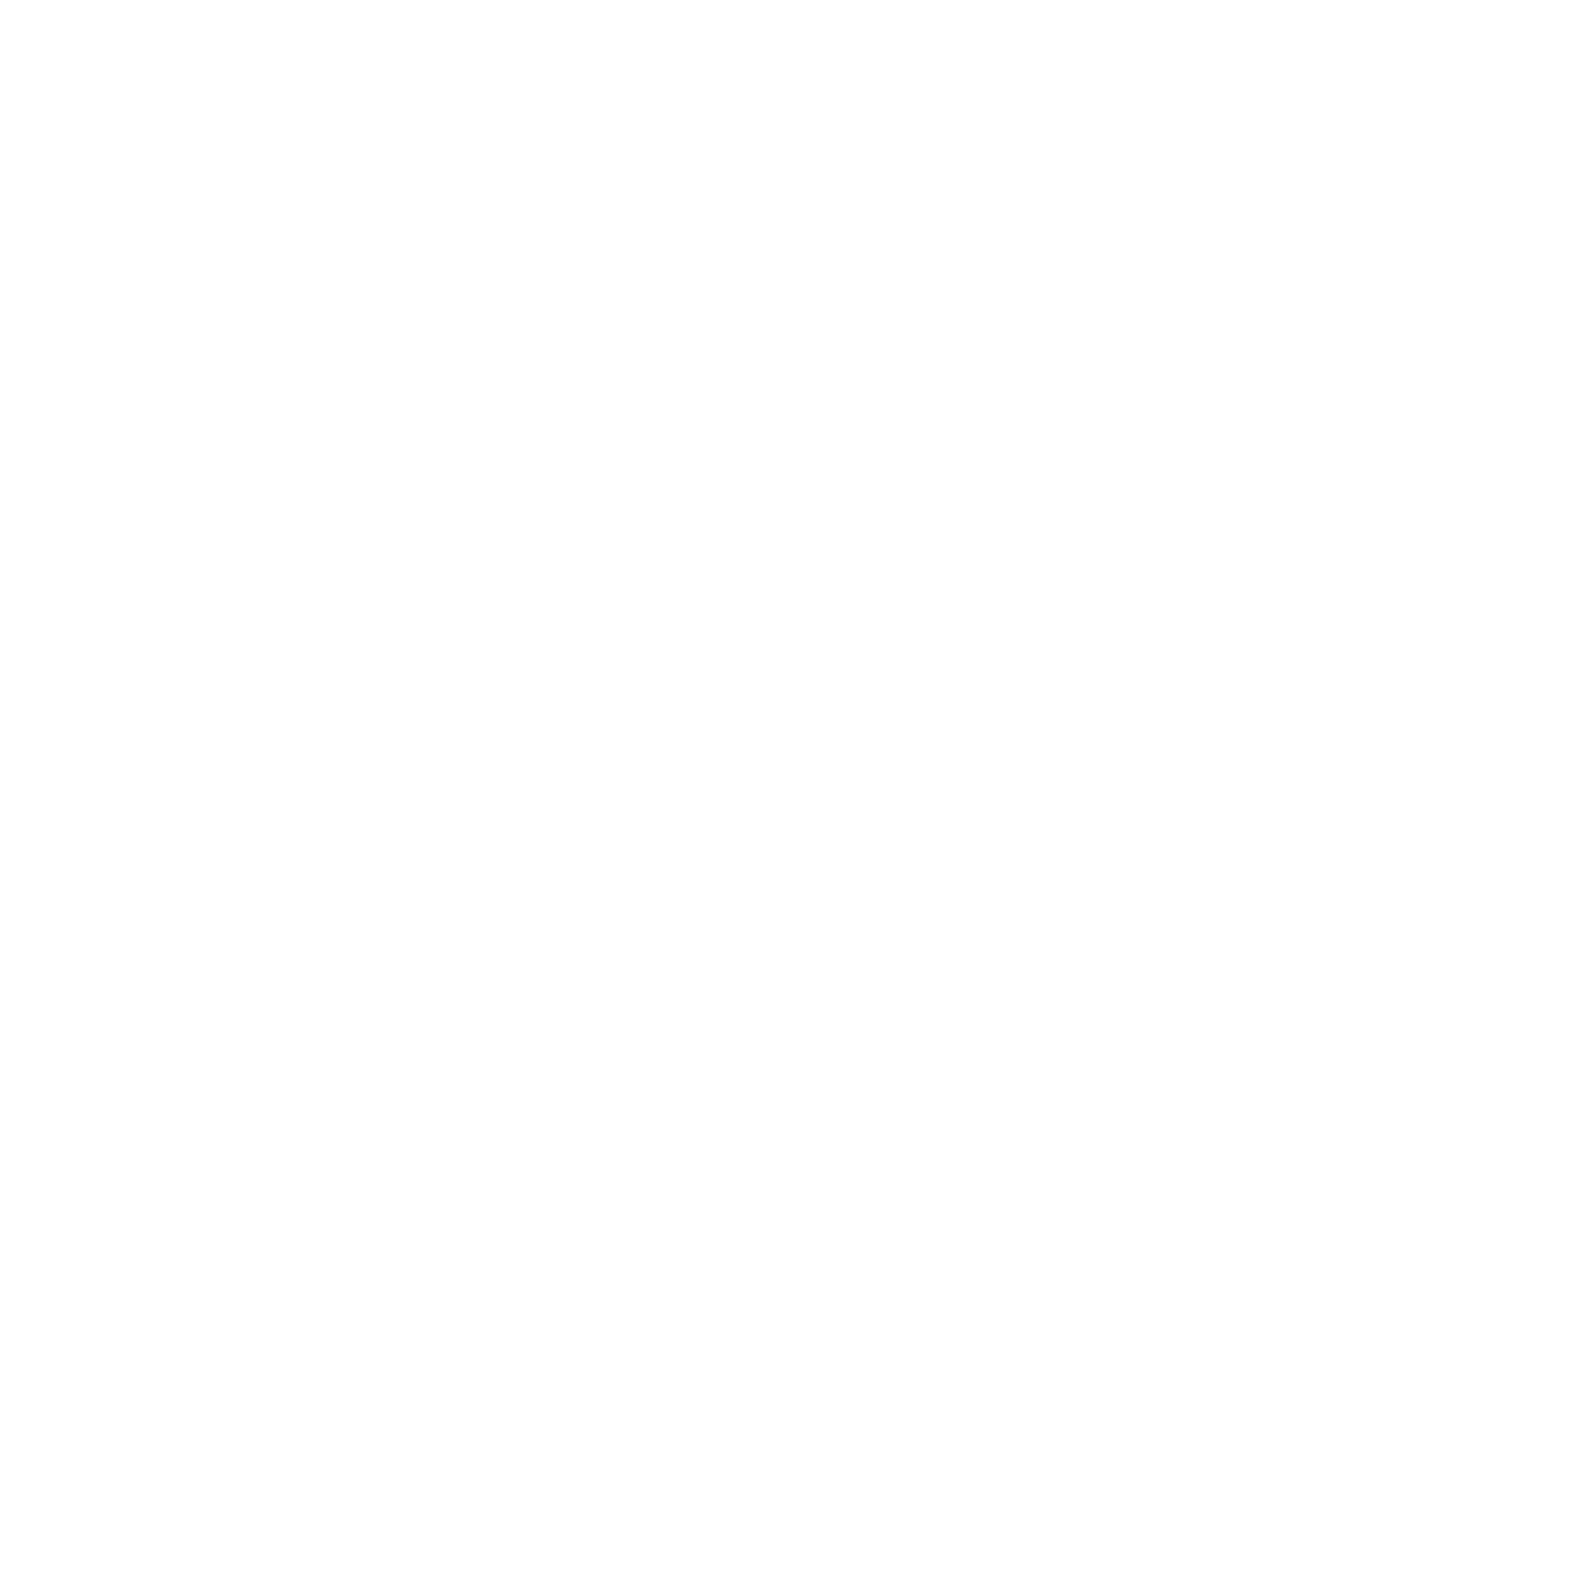 Adecoagro logo for dark backgrounds (transparent PNG)